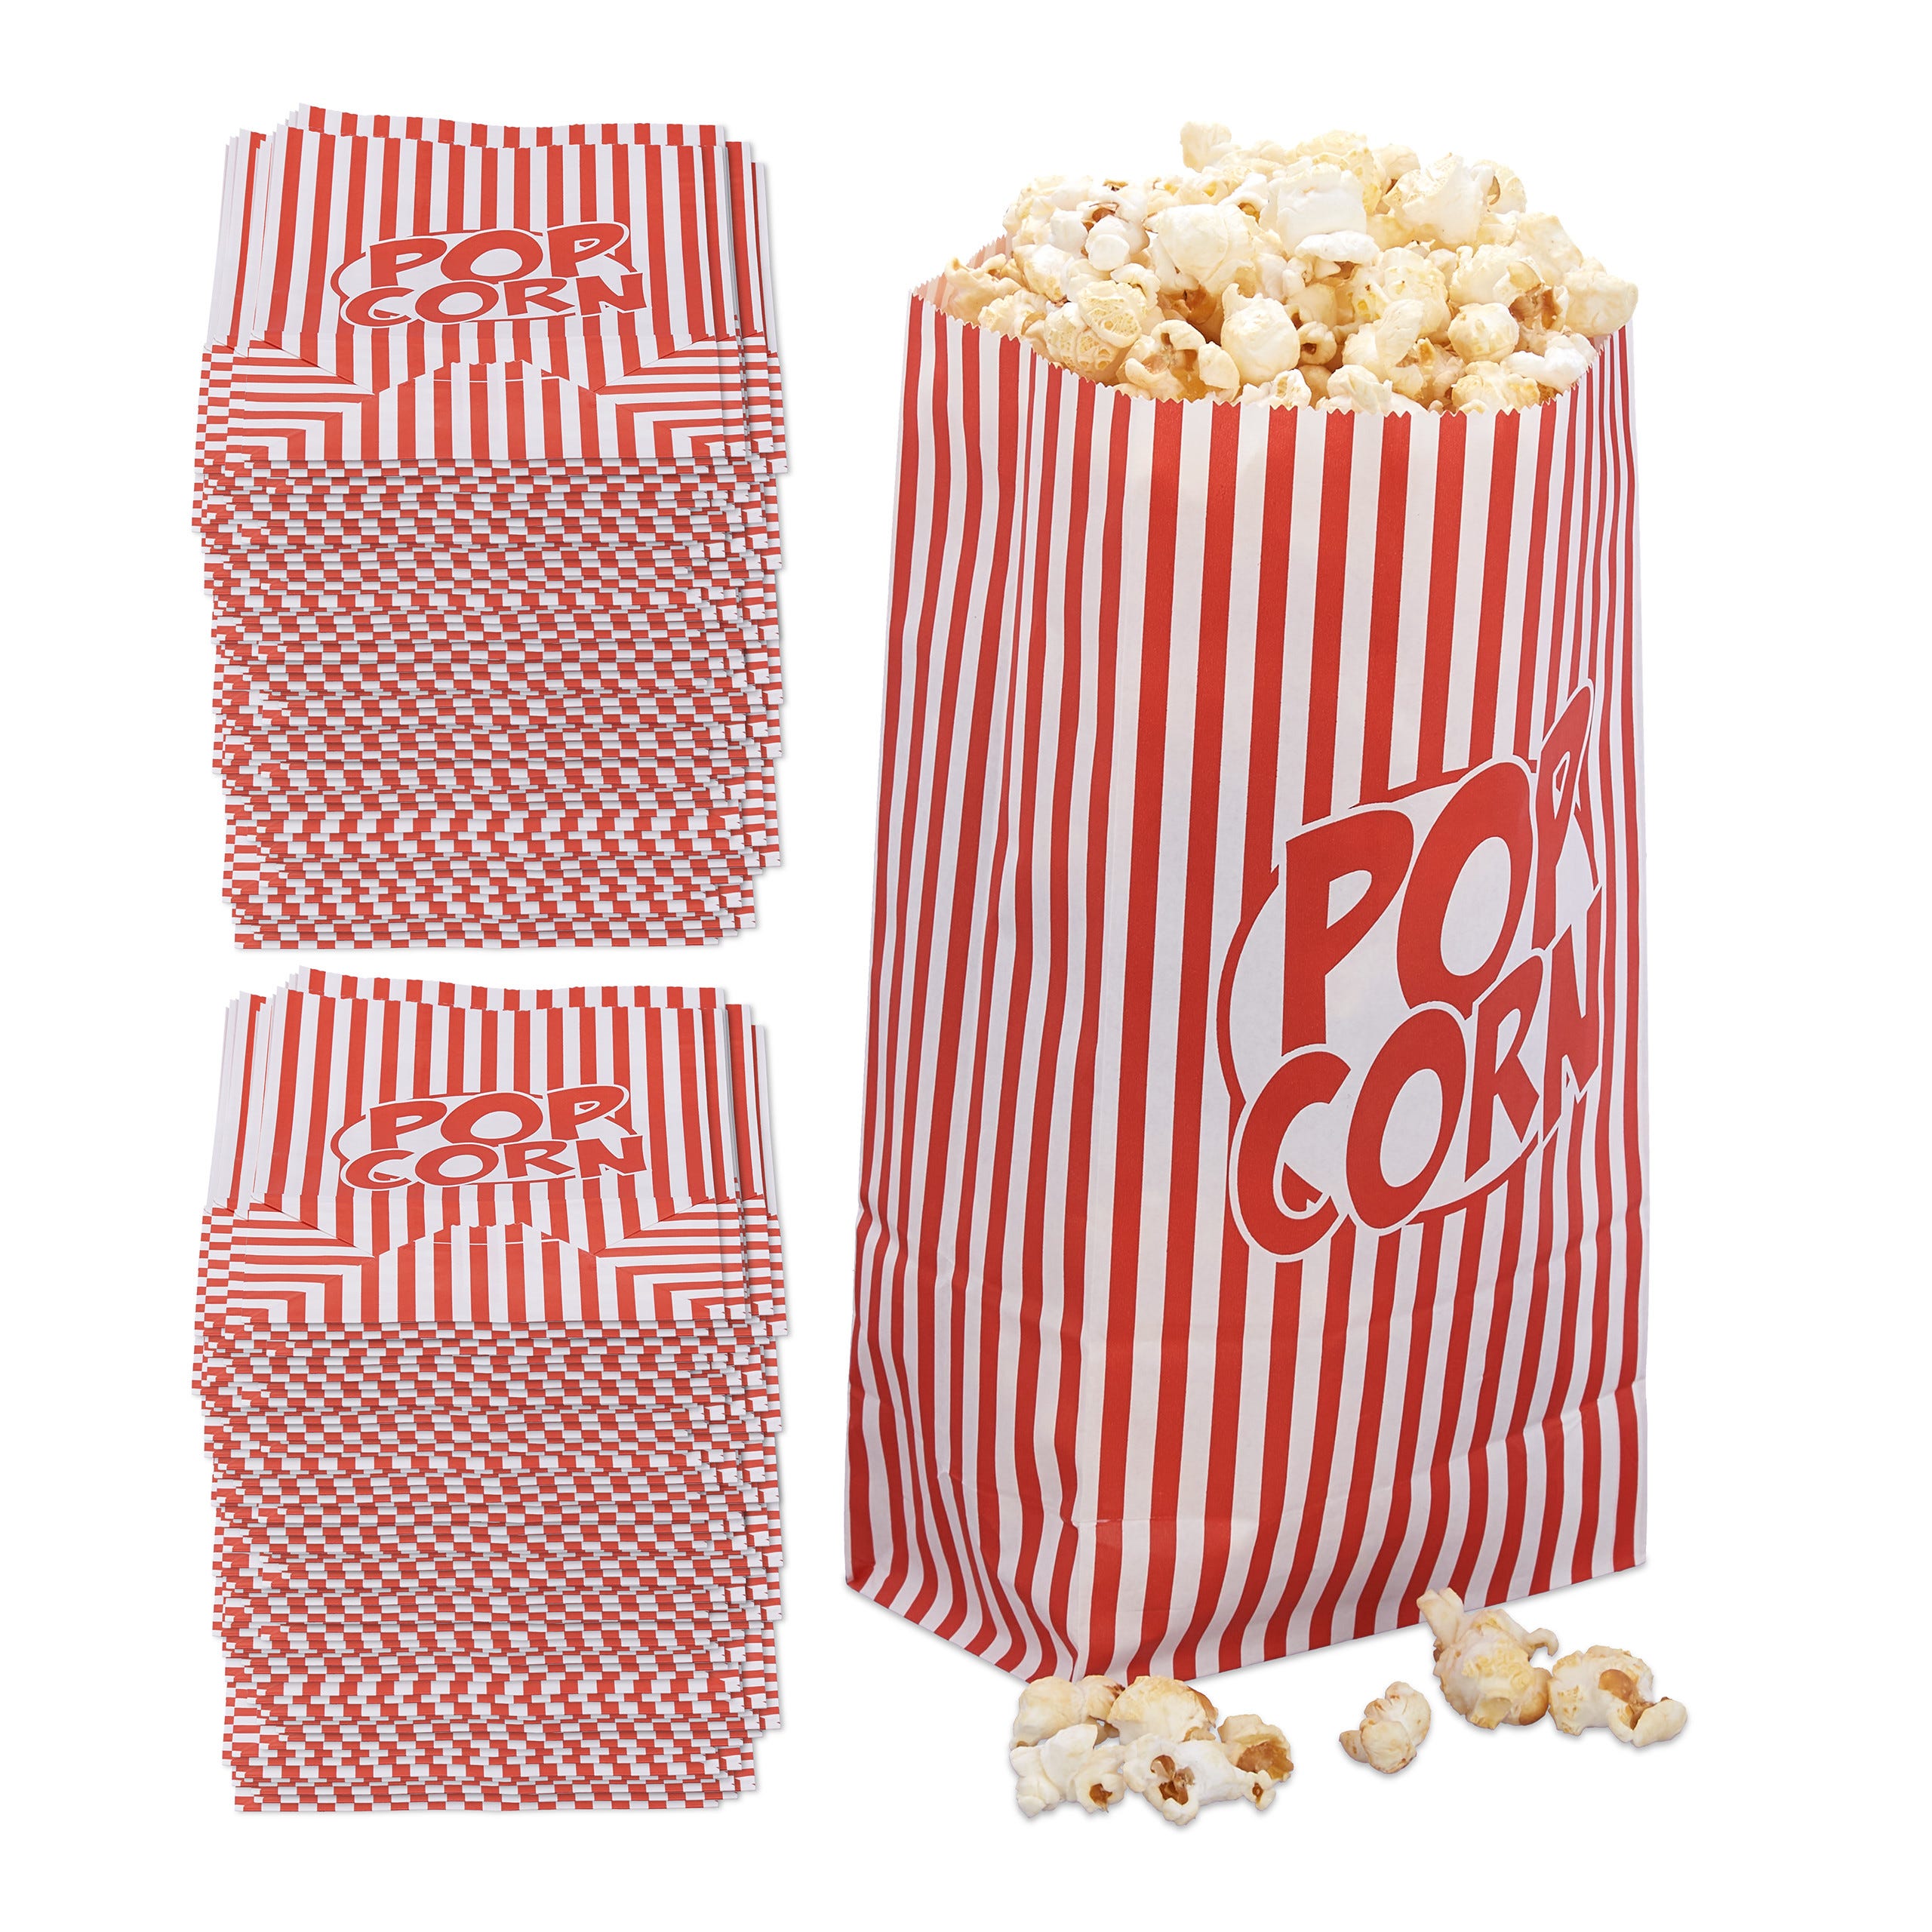 288x Sacchetti Pop Corn, Set da 288 Buste per Popcorn in Carta, Contenitore  Box Porta Caramelle, Rosso-Bianco